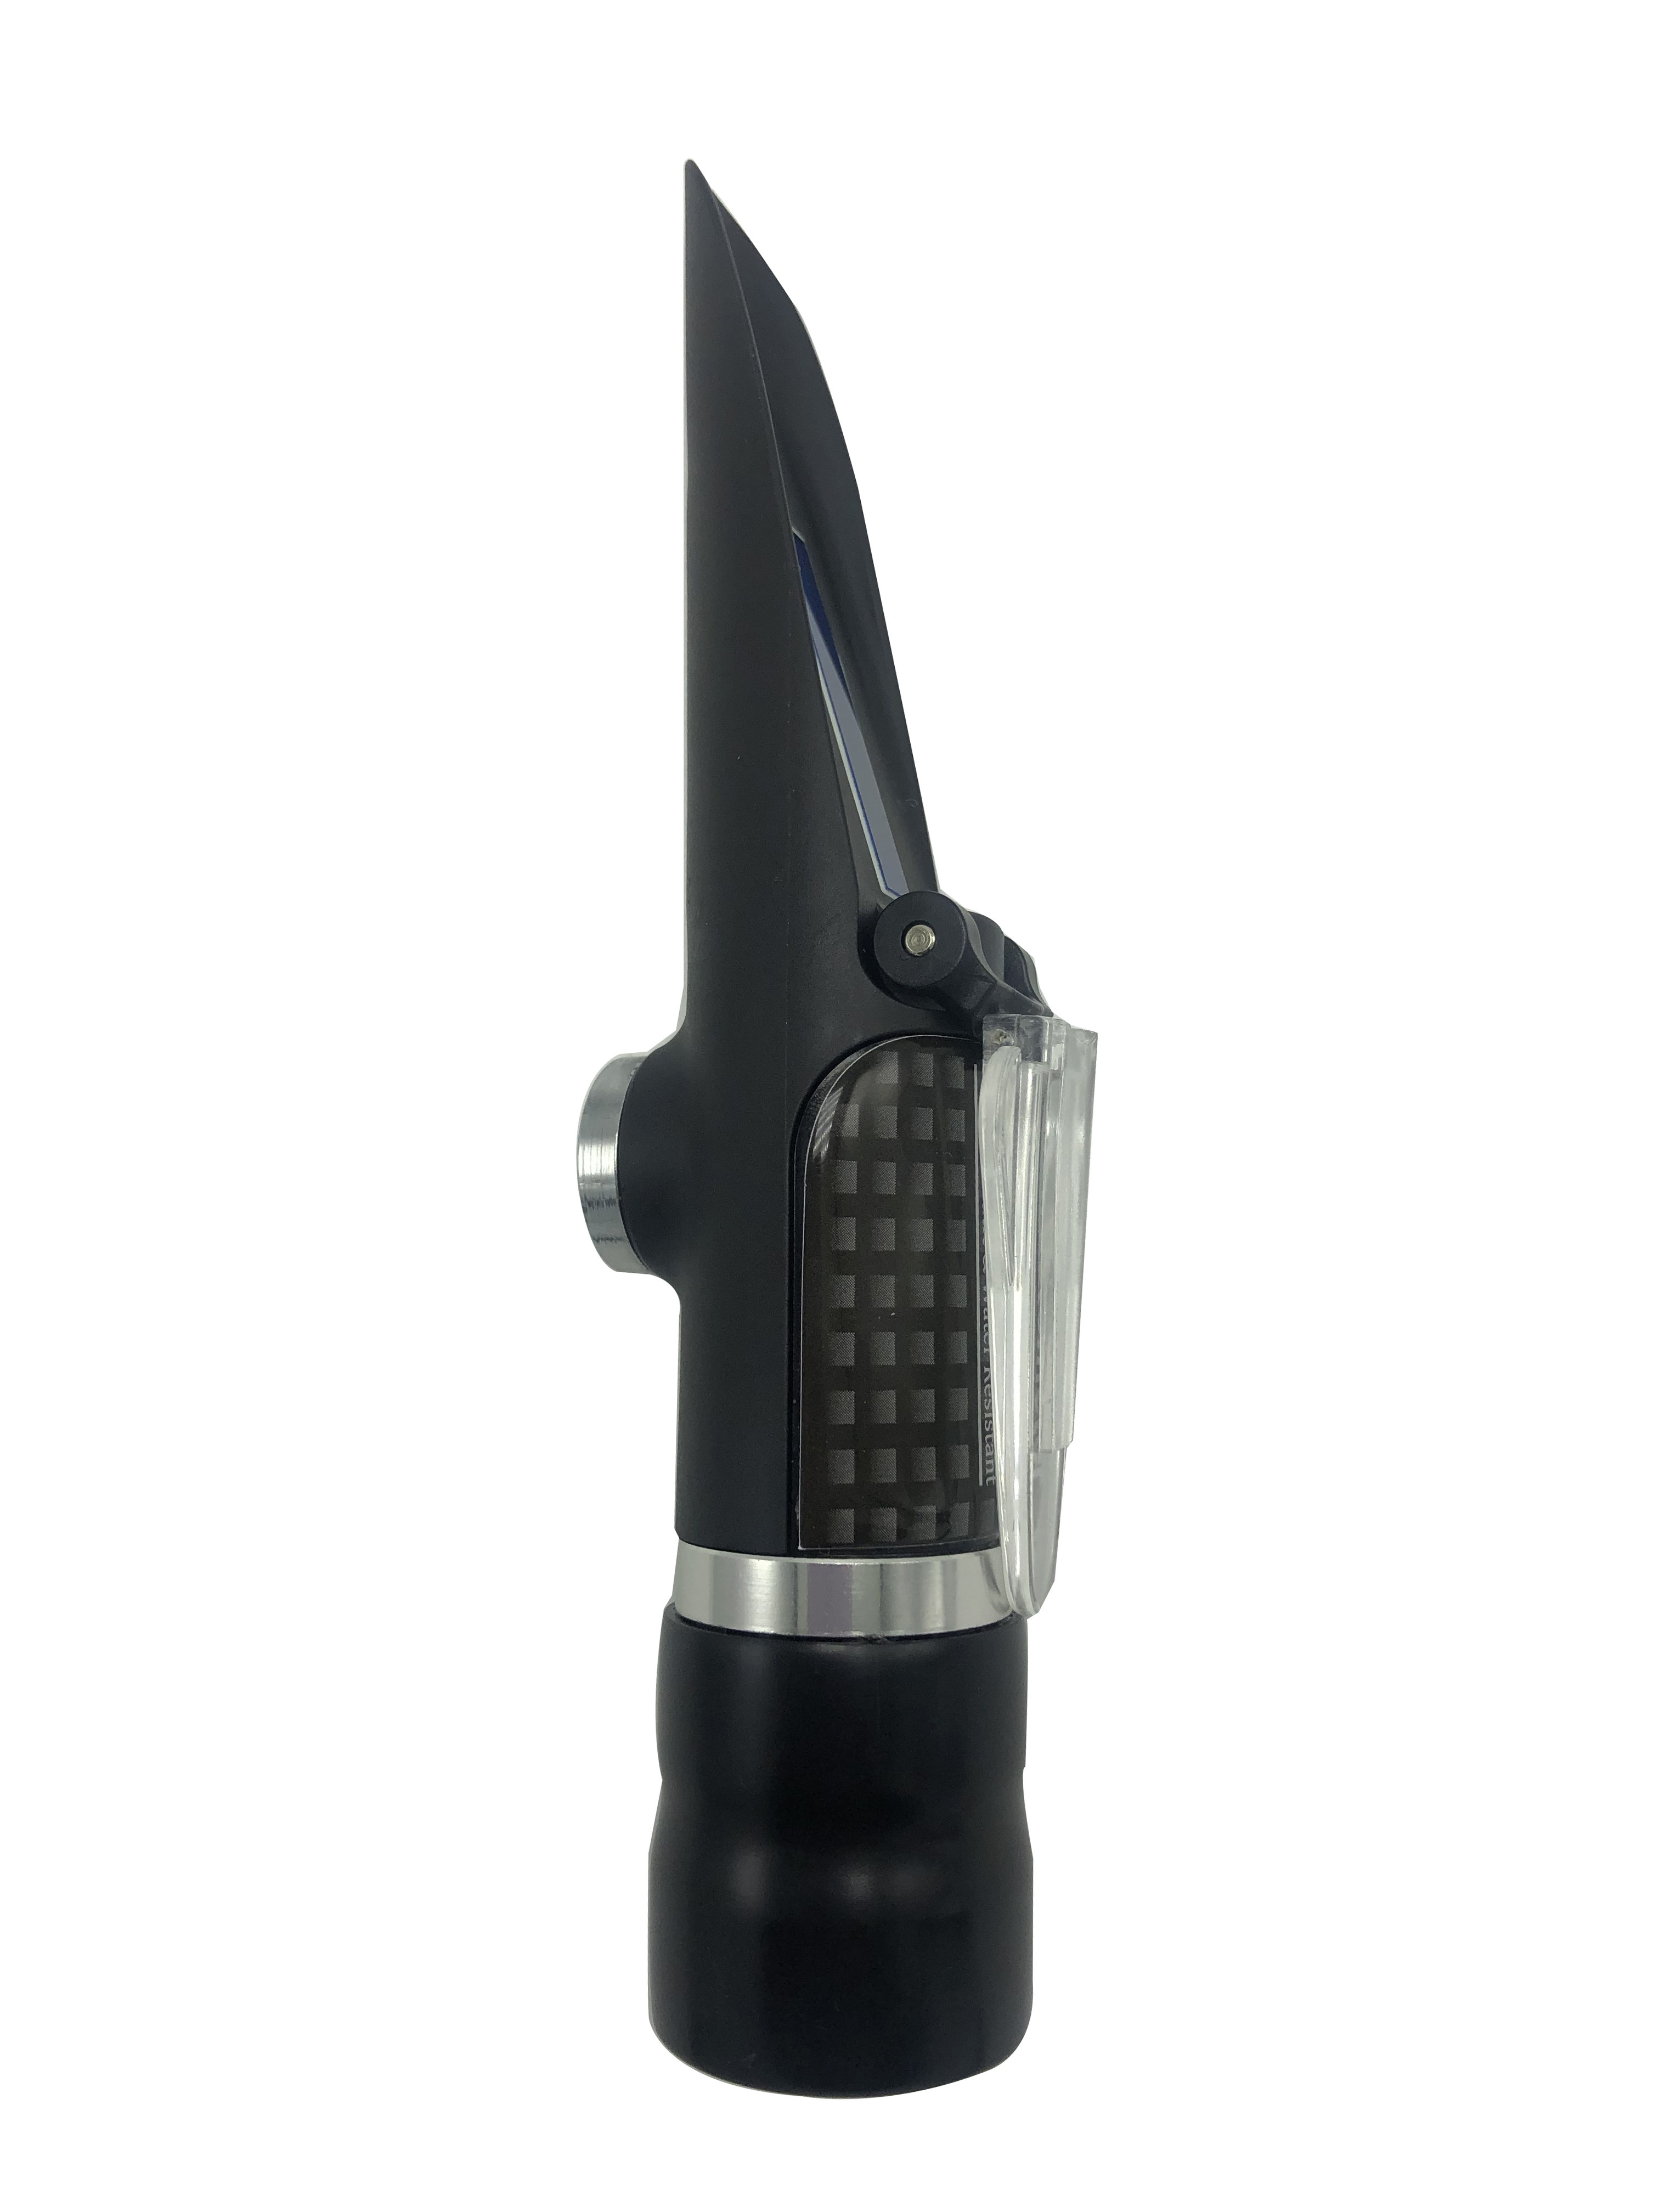 Brix Refractometer Range 0-32% of Waterproof Handheld Refractometer